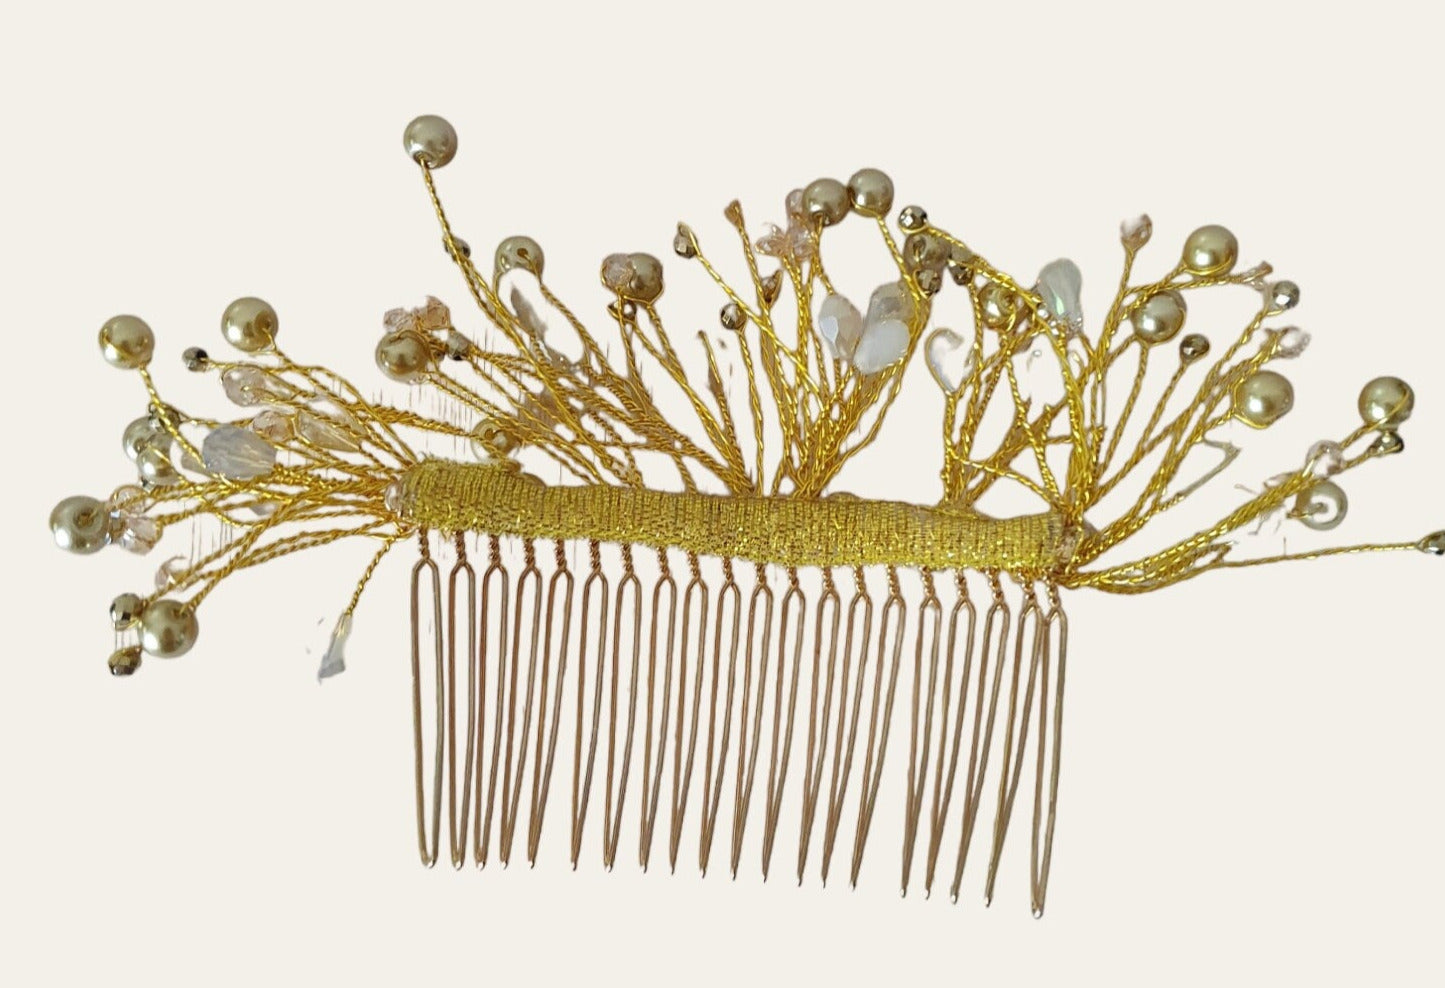 Peineta de novia hecha a mano con perlas y piedras caídas - Elegante accesorio para el cabello para bodas, bodas y fiestas, peineta de metal de color dorado